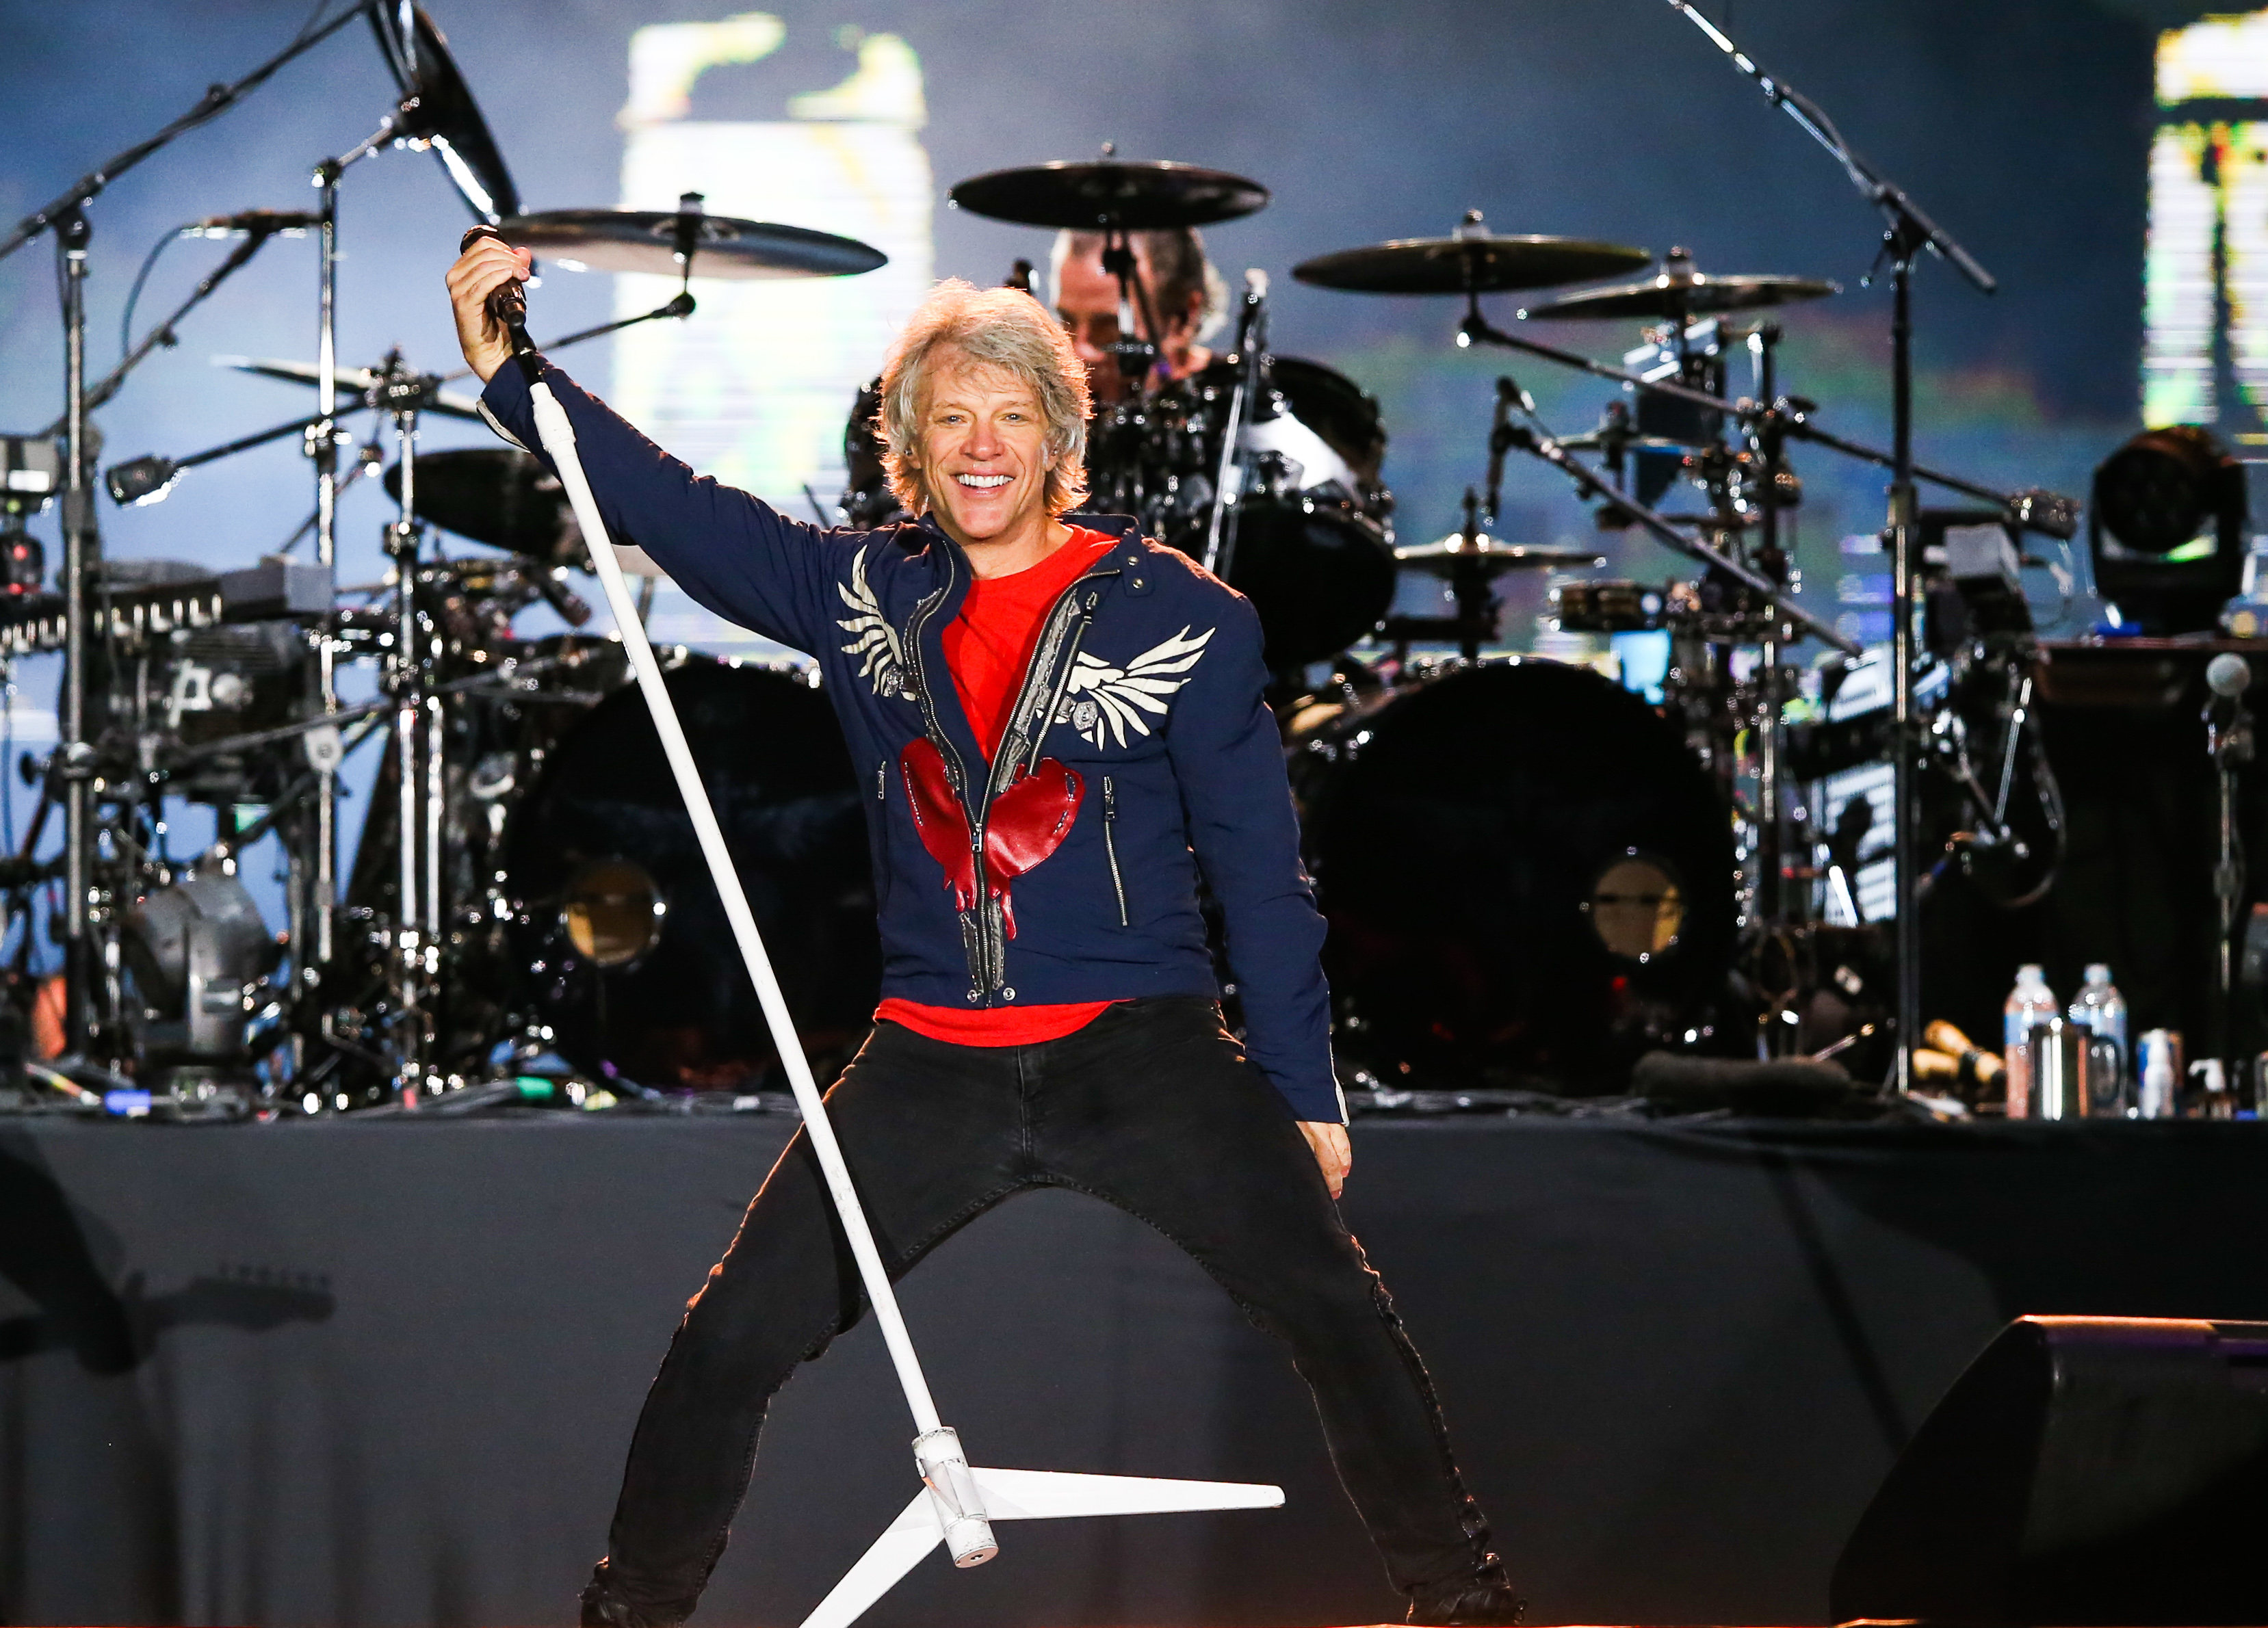 Jon Bon Jovi performs during Rock In Rio at Cidade do Rock on September 29, 2019, in Rio de Janeiro, Brazil | Source: Getty Images